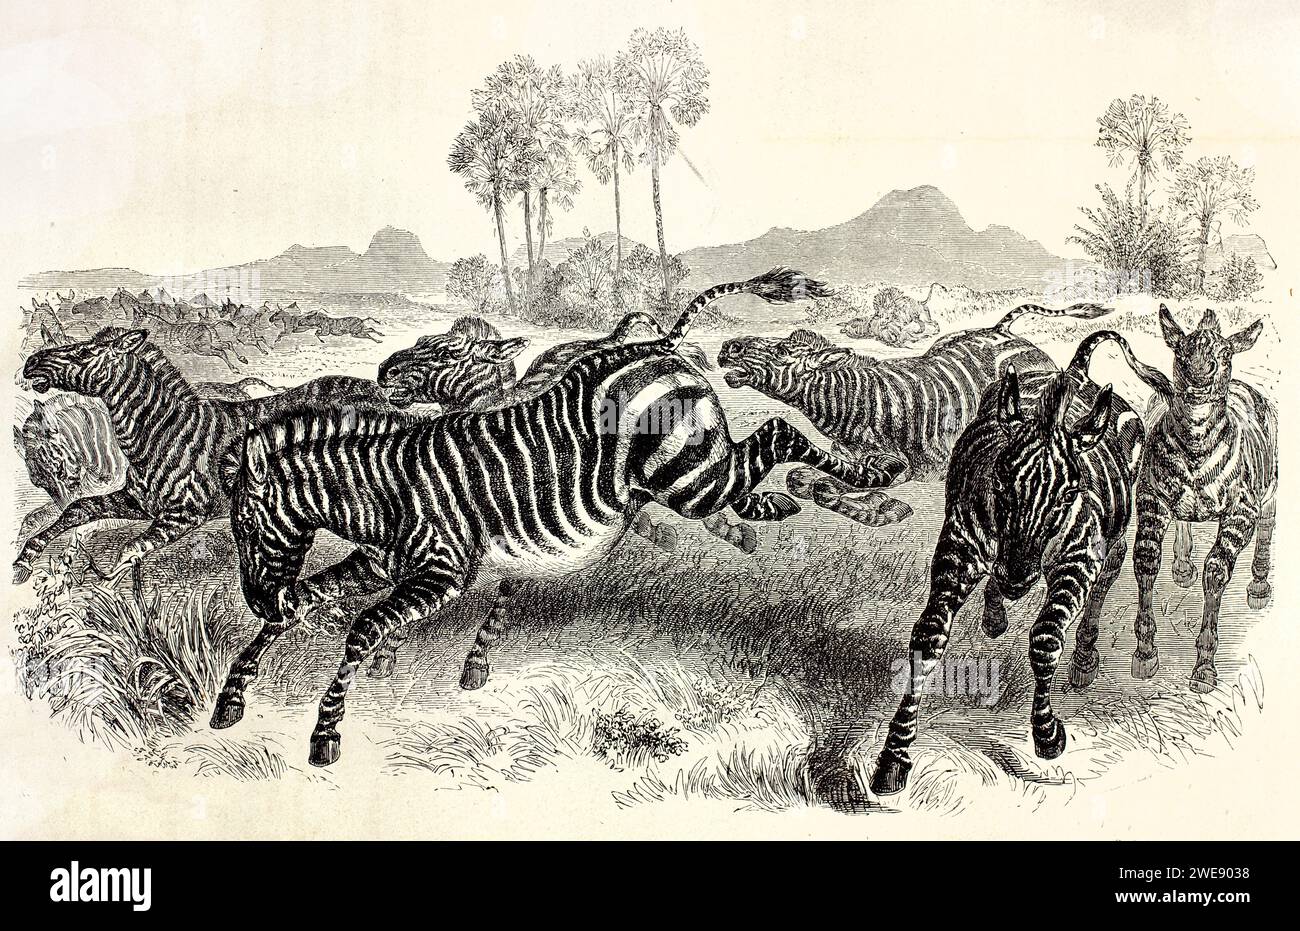 Vieille illustration gravée du troupeau de Nountain Zebras. Créé par Ktretschmer et Illner, publié sur Brehm, les Mammifères, Baillière et fils, Paris, 187 Banque D'Images